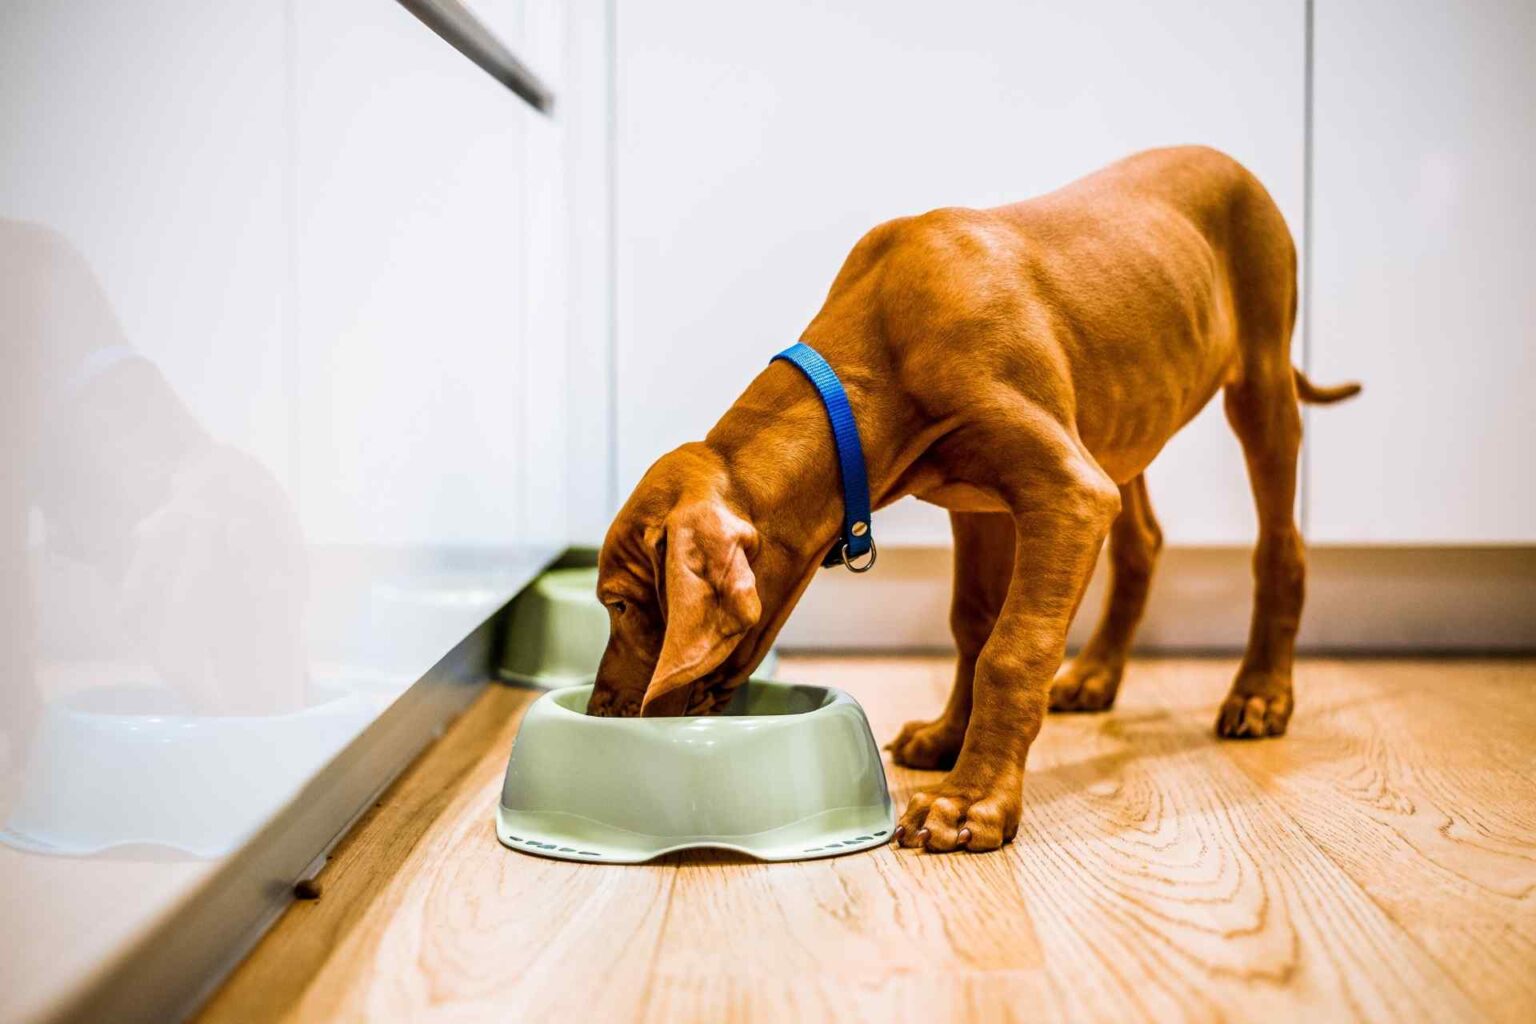 Passare da una dieta estrusa a mildly cooked: gli effetti sul microbiota intestinale canino